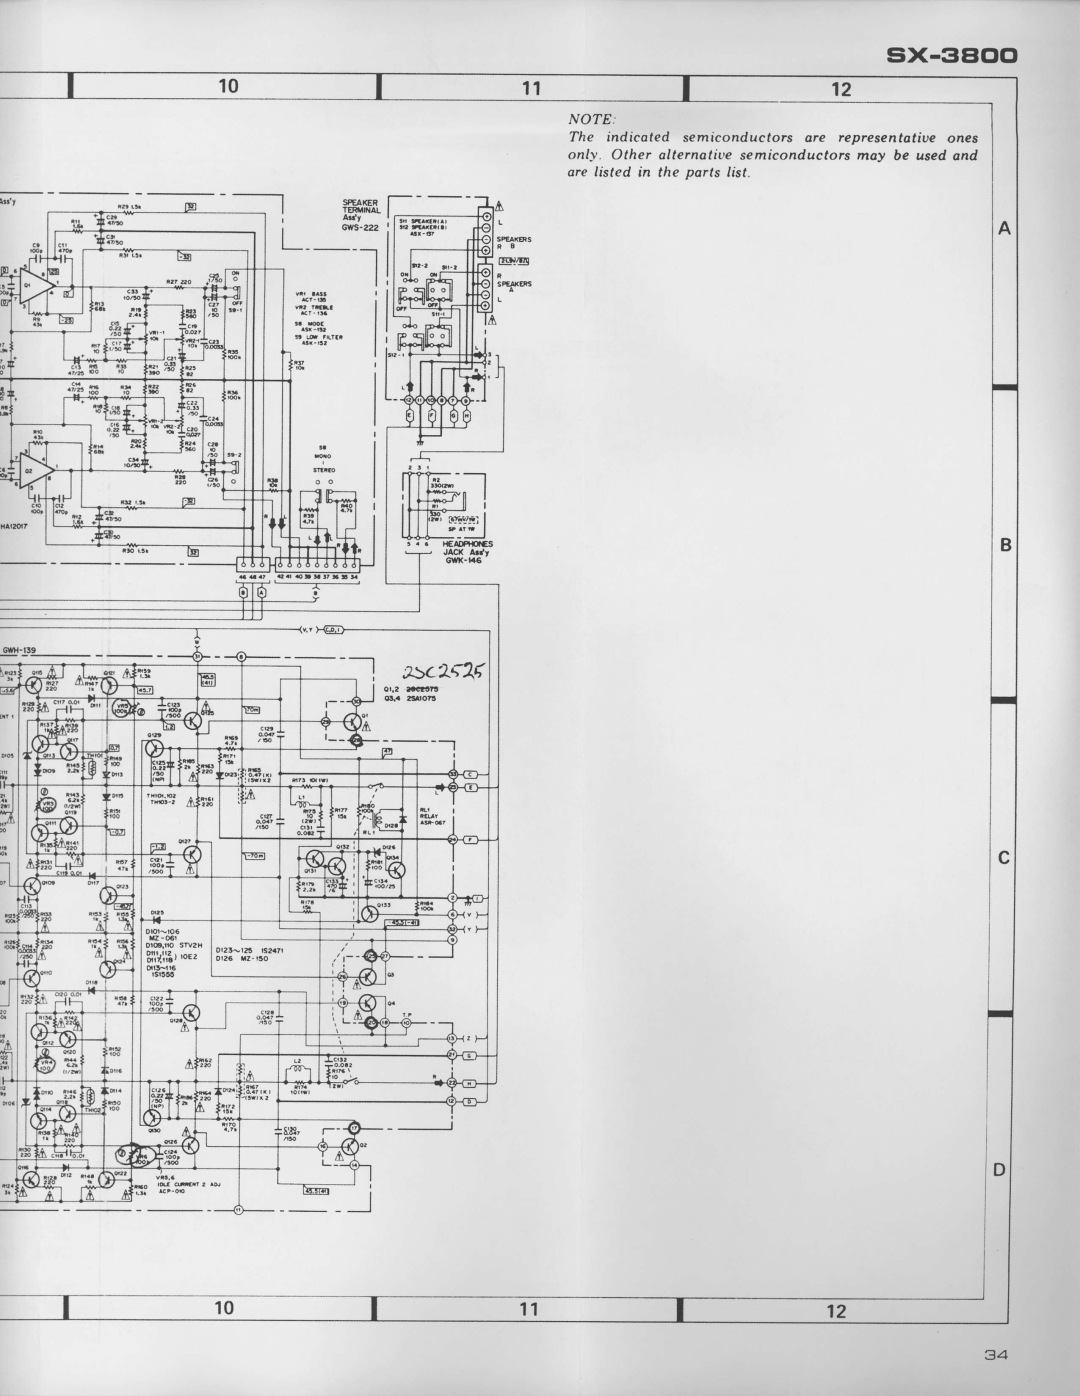 Pioneer SX-3800 manual 7caT, l ffTJ-ir, sx-3Eoo, Gars-422 